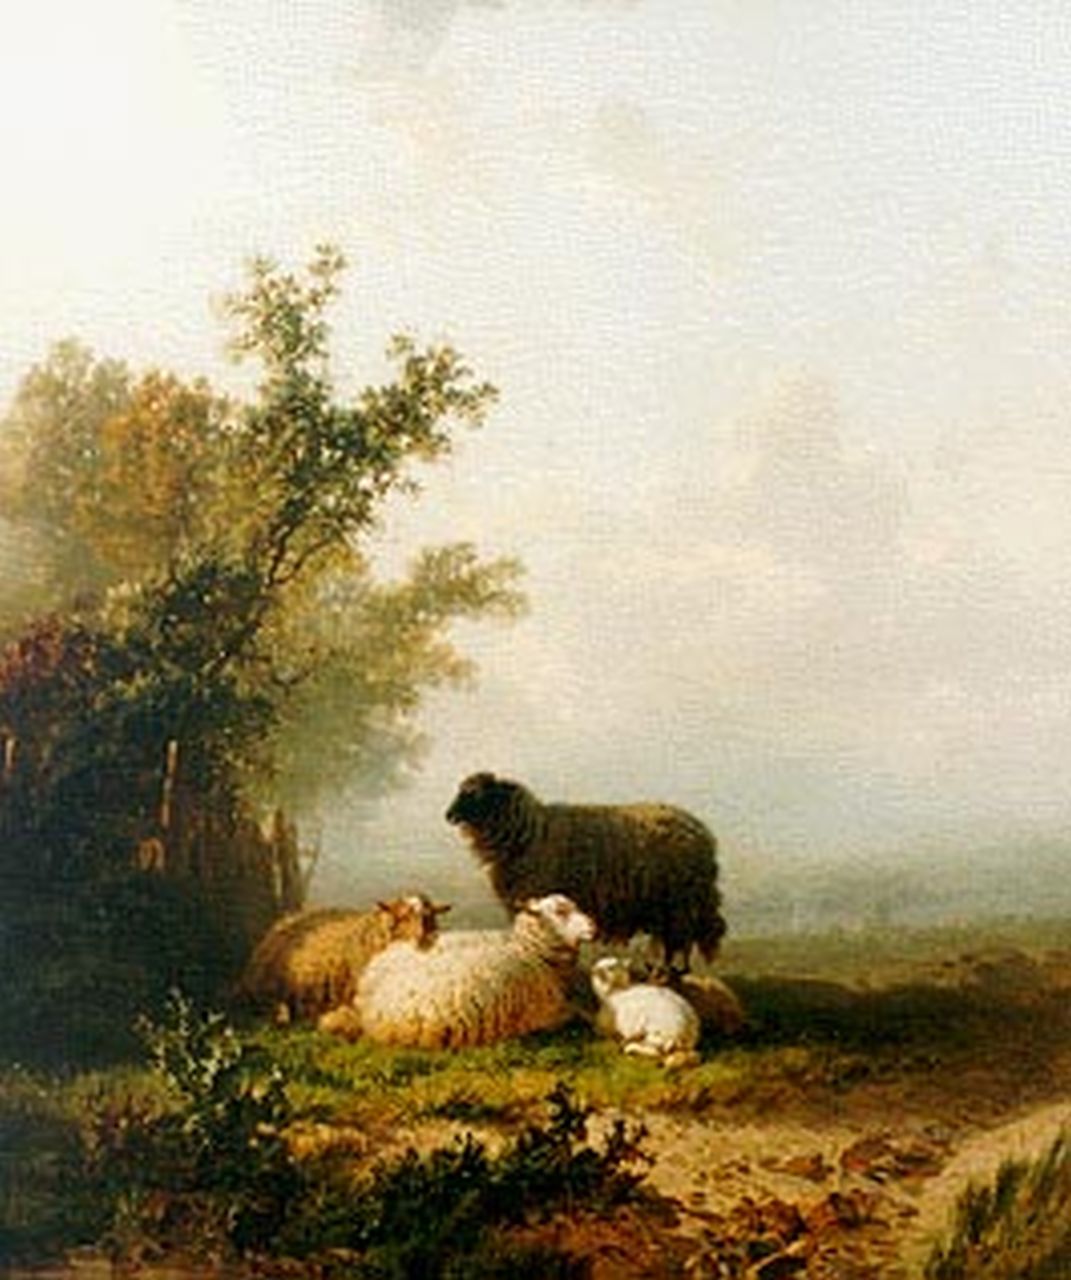 Bylandt A.E.A. van | Alfred Edouard Agenor van Bylandt, Sheep in a landscape, oil on canvas 60.0 x 51.0 cm, signed l.r.